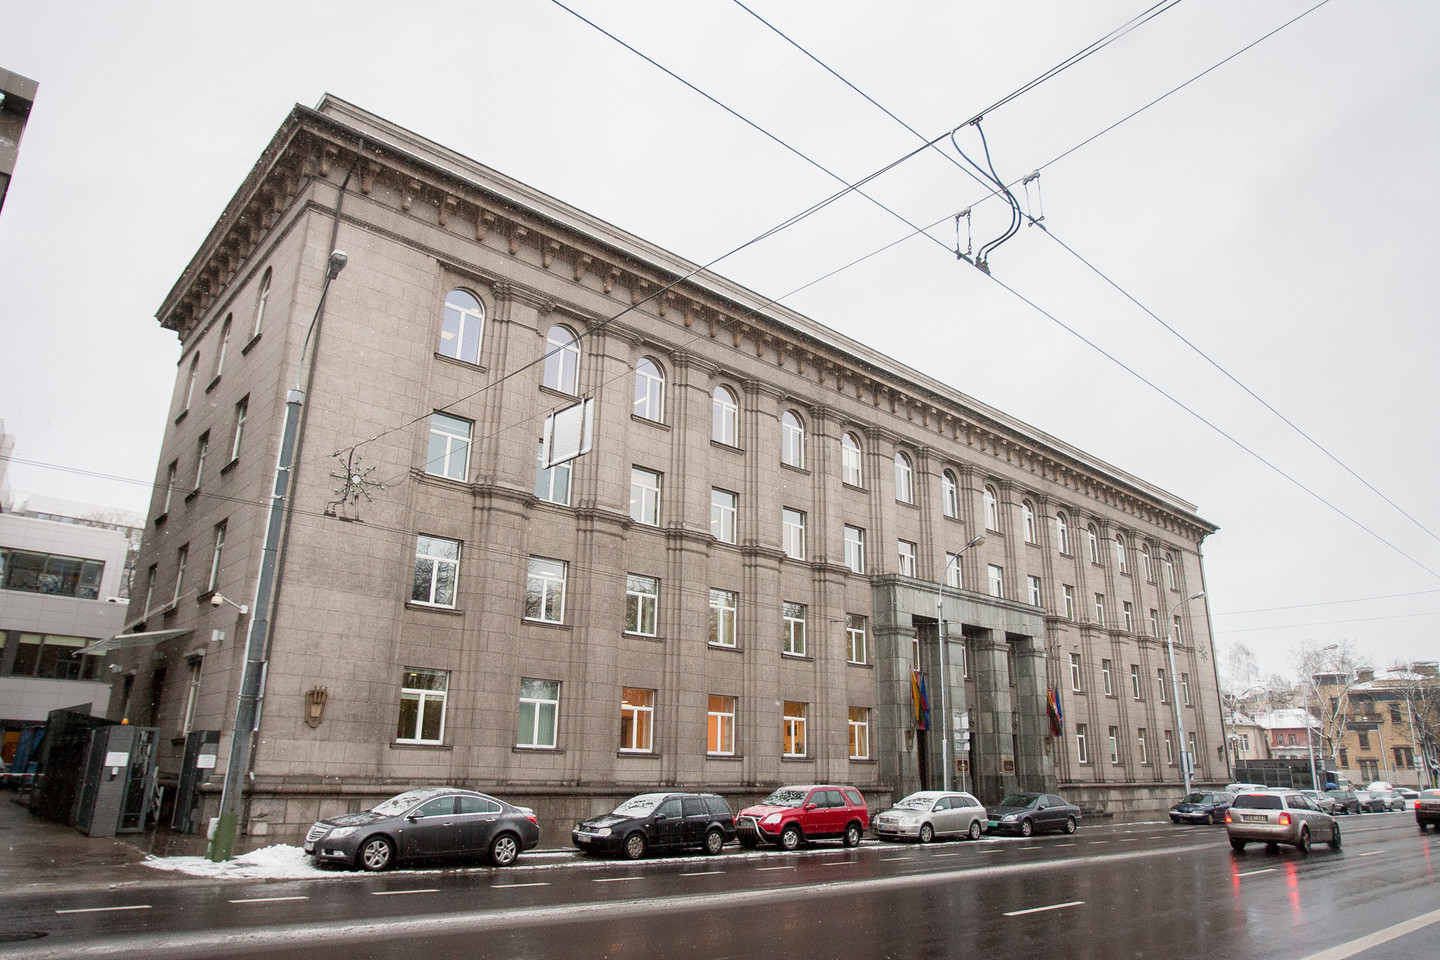 Didžiausia administracinio nekilnojamojo turto valdytoja Vilniuje yra Užsienio reikalų ministerija, naudojanti daugiau nei 19 tūkst. kv. metrų ploto.<br>J.Stacevičiaus nuotr.